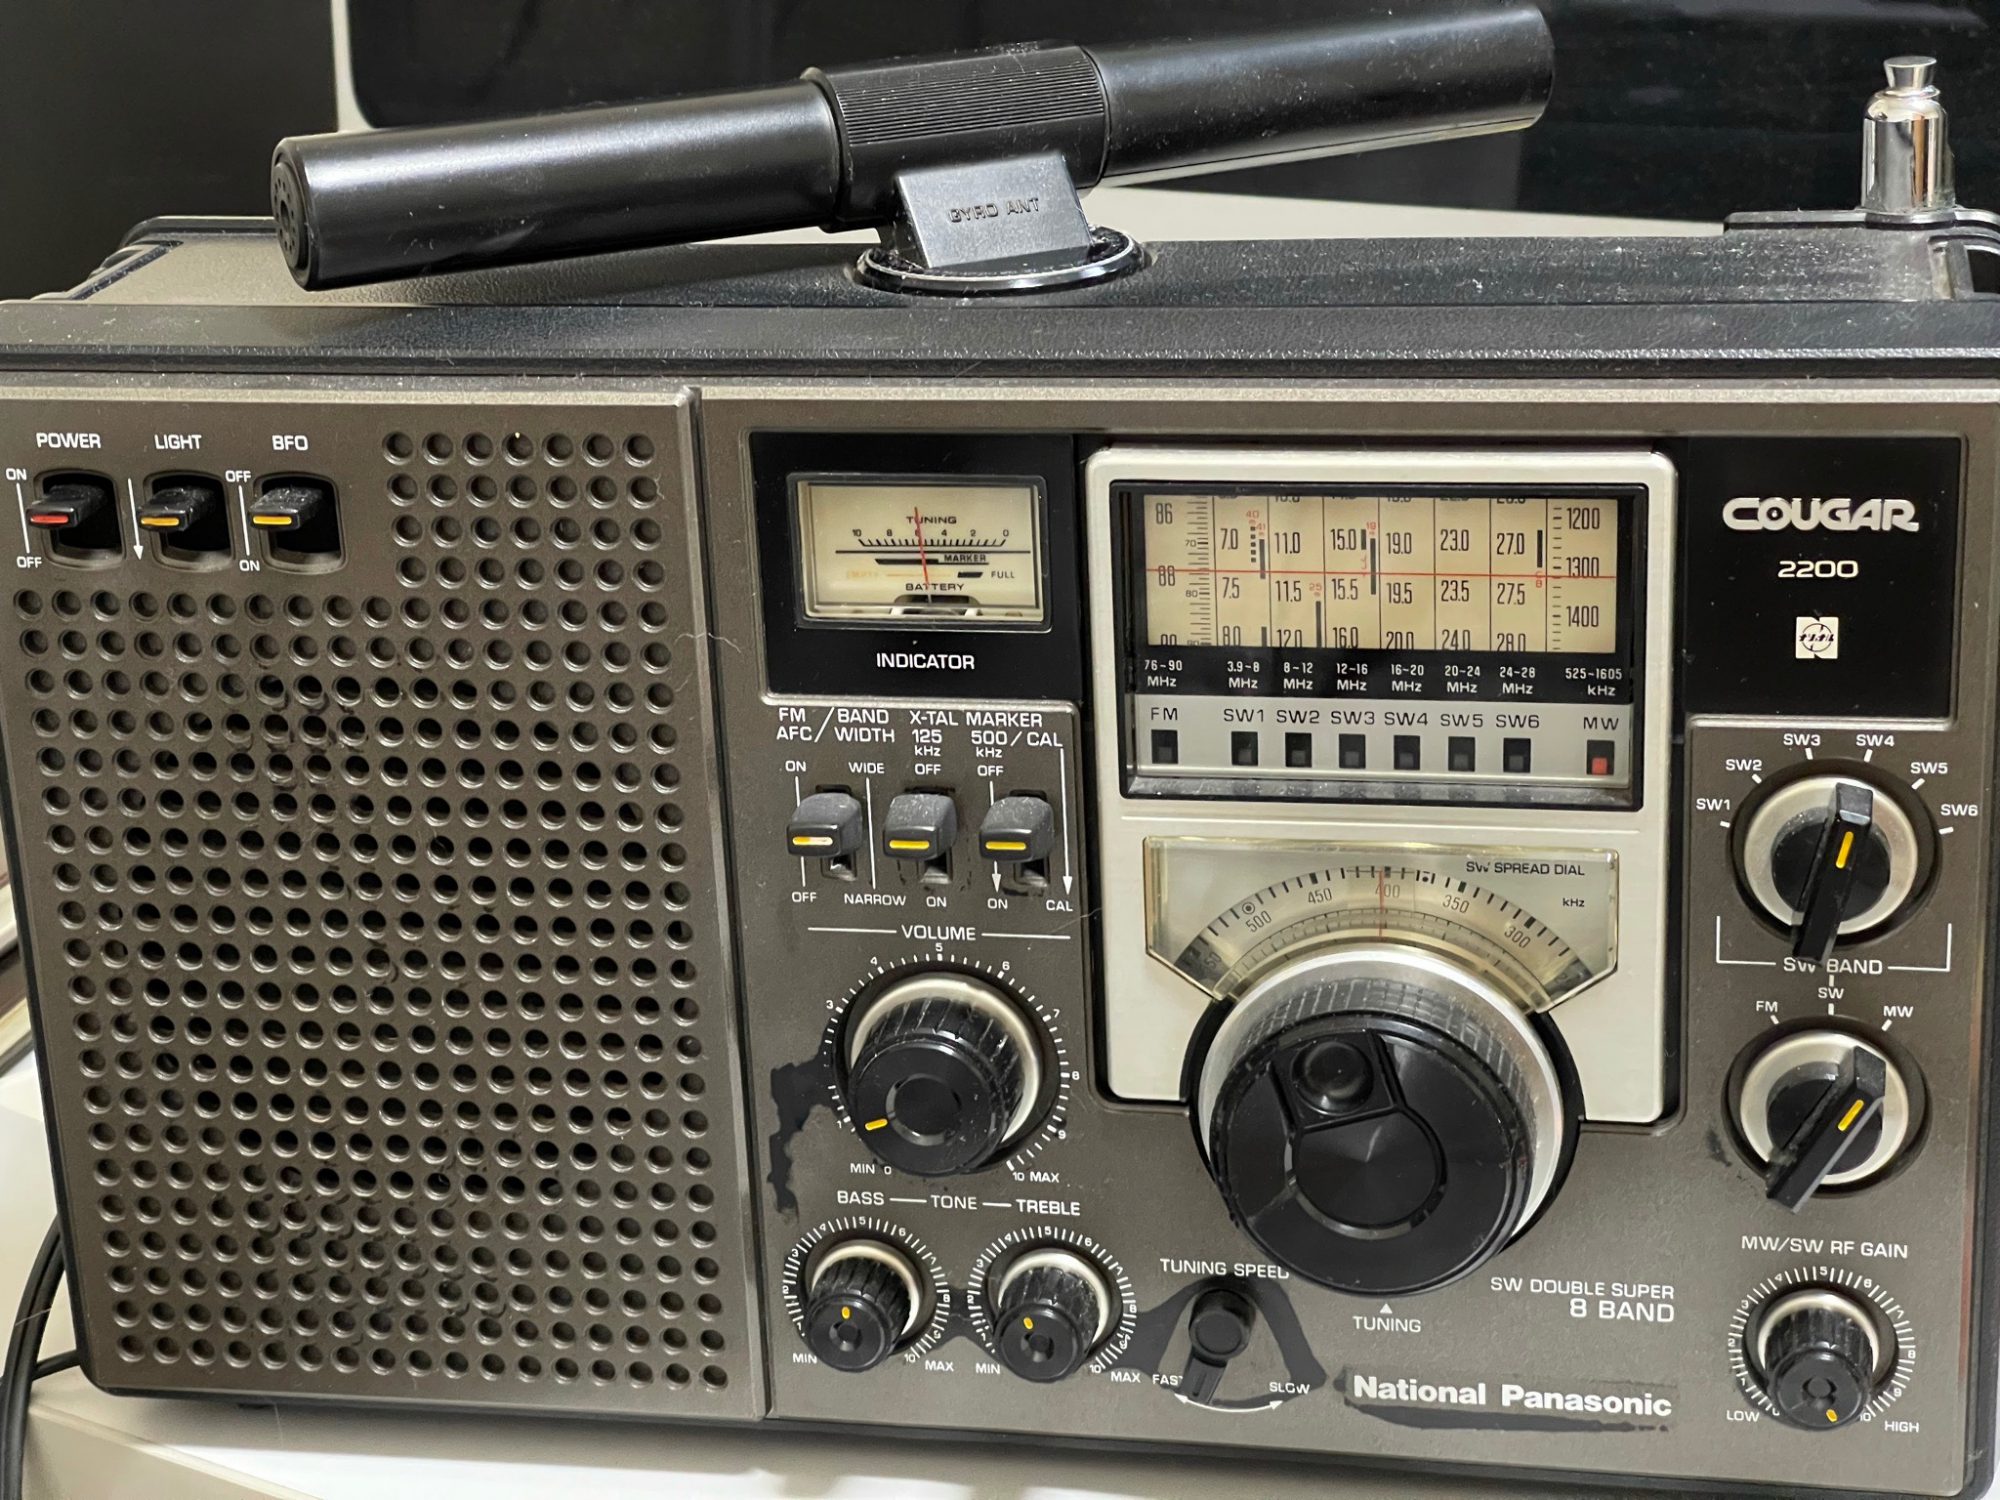 National Panasonic クーガー2200 RF-2200 程度良好 - ラジオ